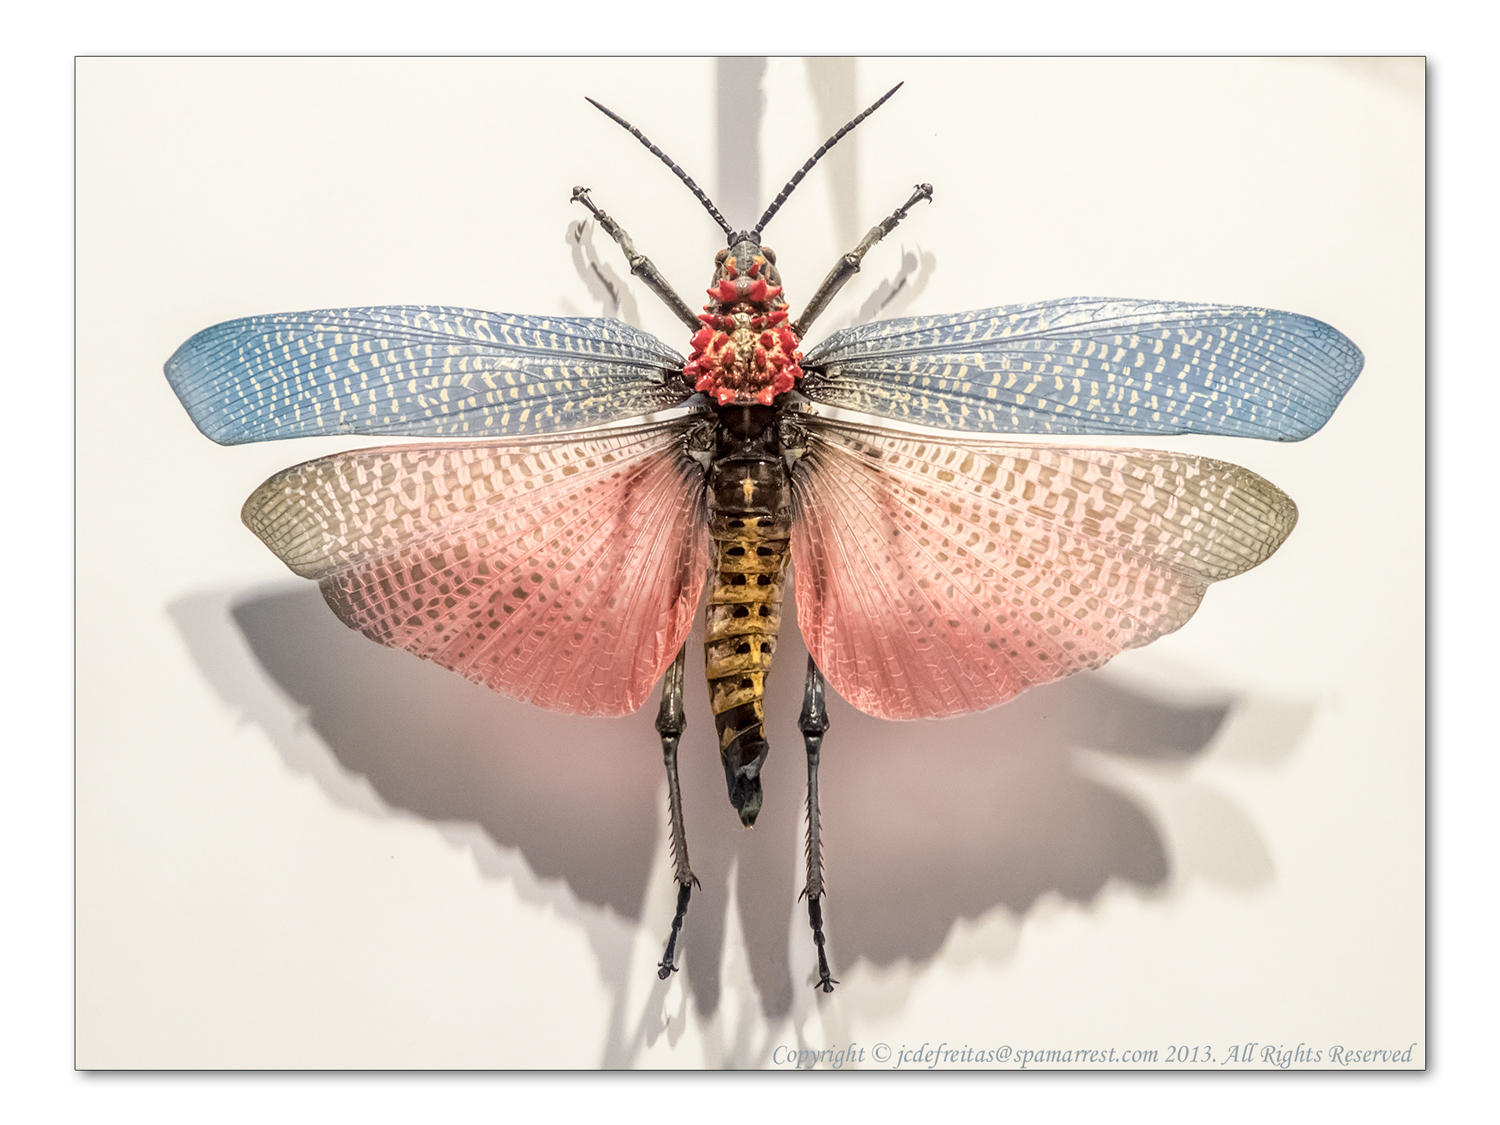 2014 - Insectarium - Montreal Botanic Garden, Quebec - Canada